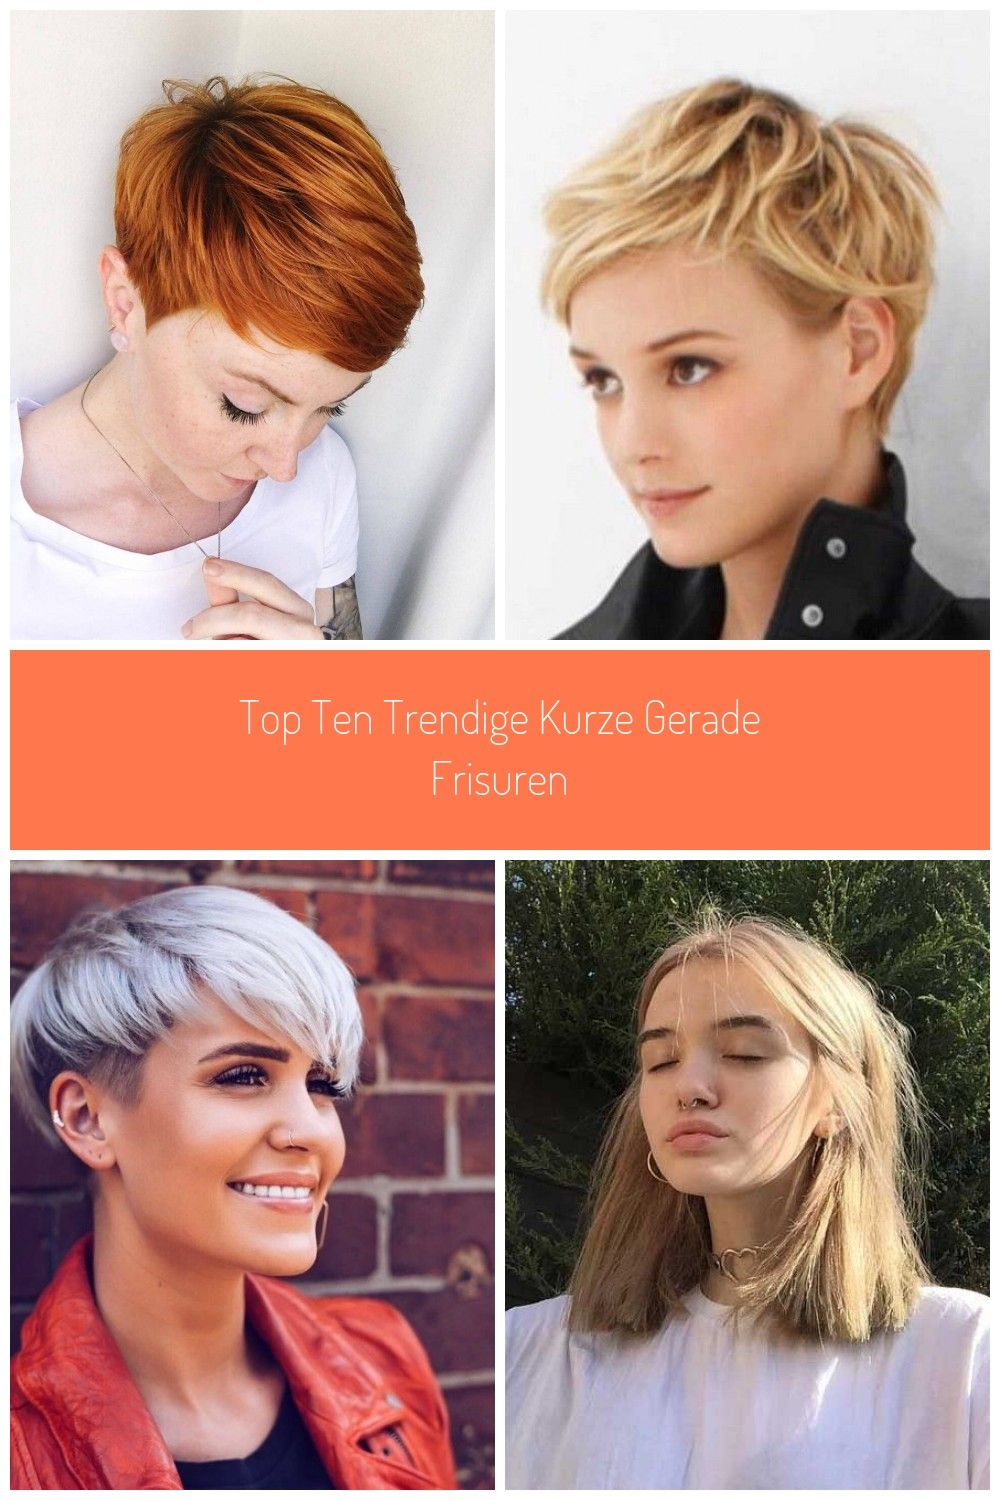 Top Ten Trendige kurze gerade Frisuren  #frisuren #gerade #kurze #trendige #Kurz…